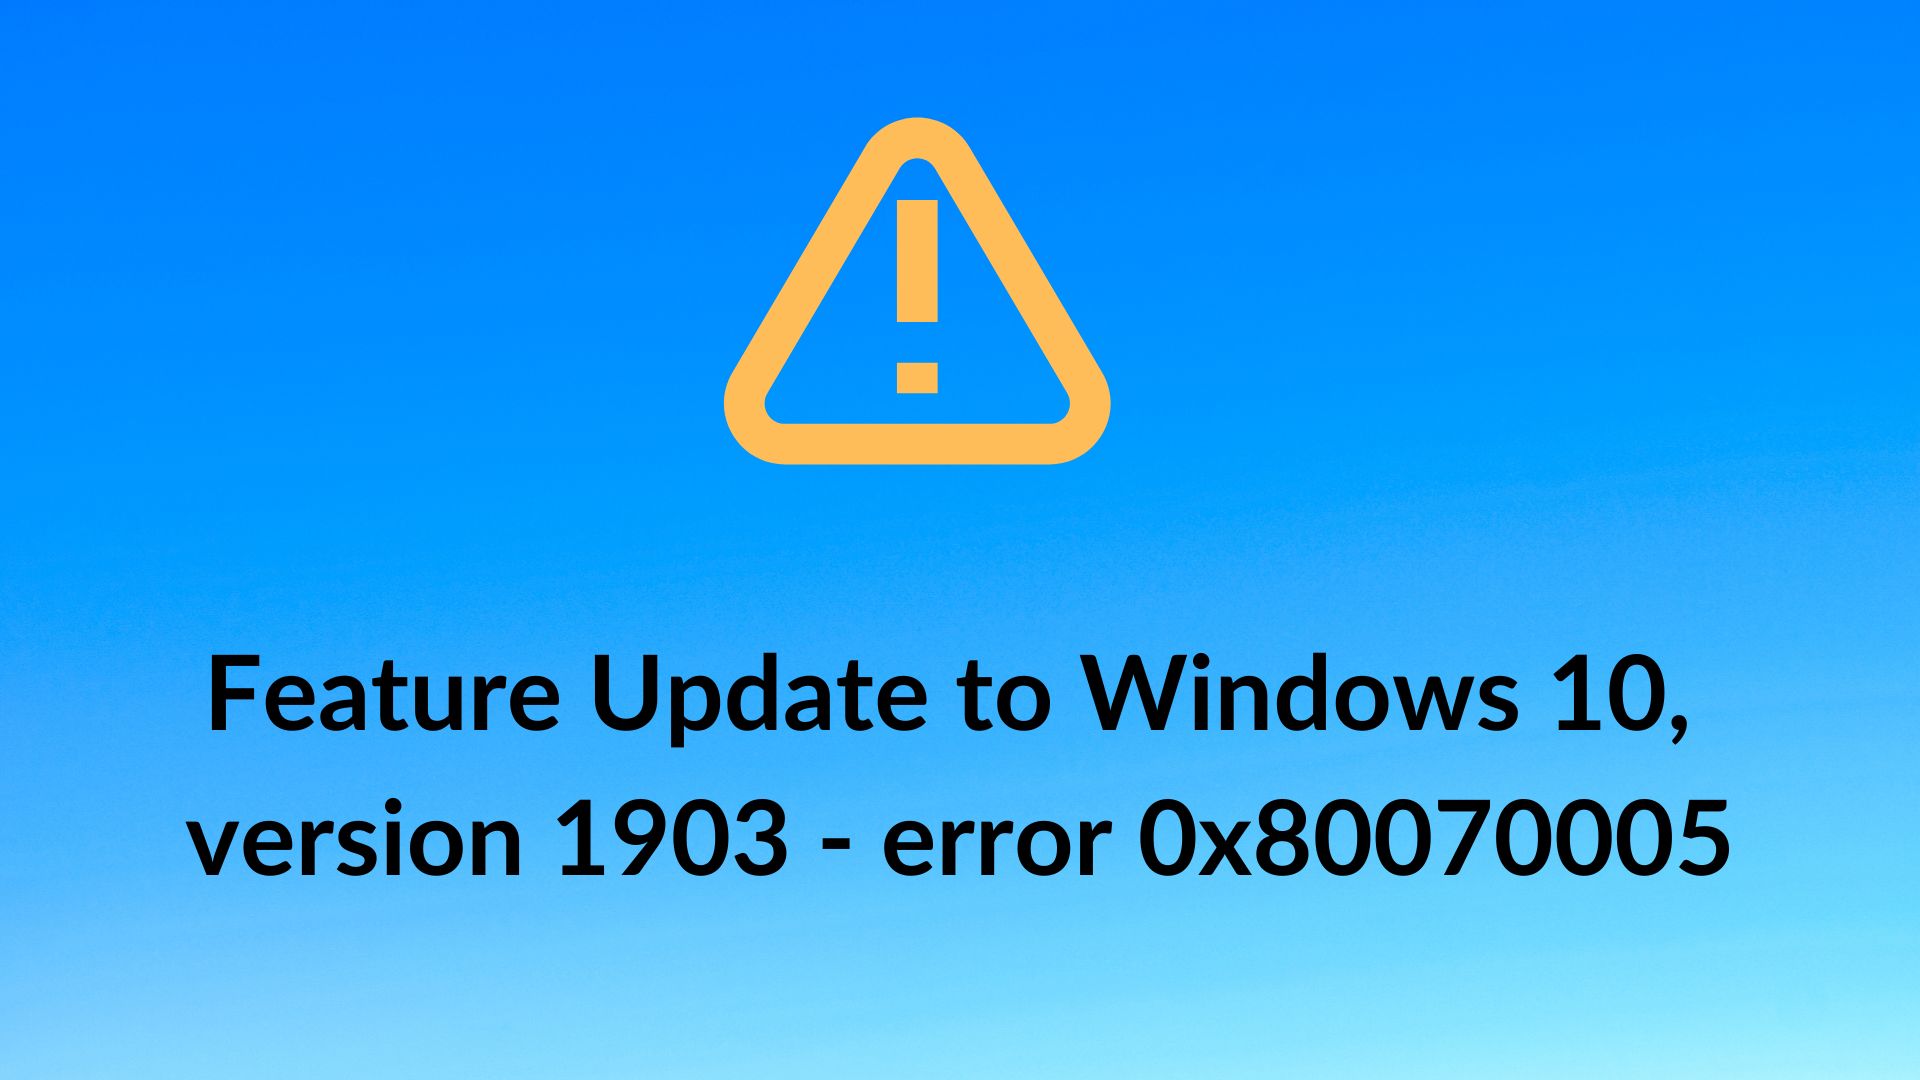 Feature Update to Windows 10, version 1903 - error 0x80070005